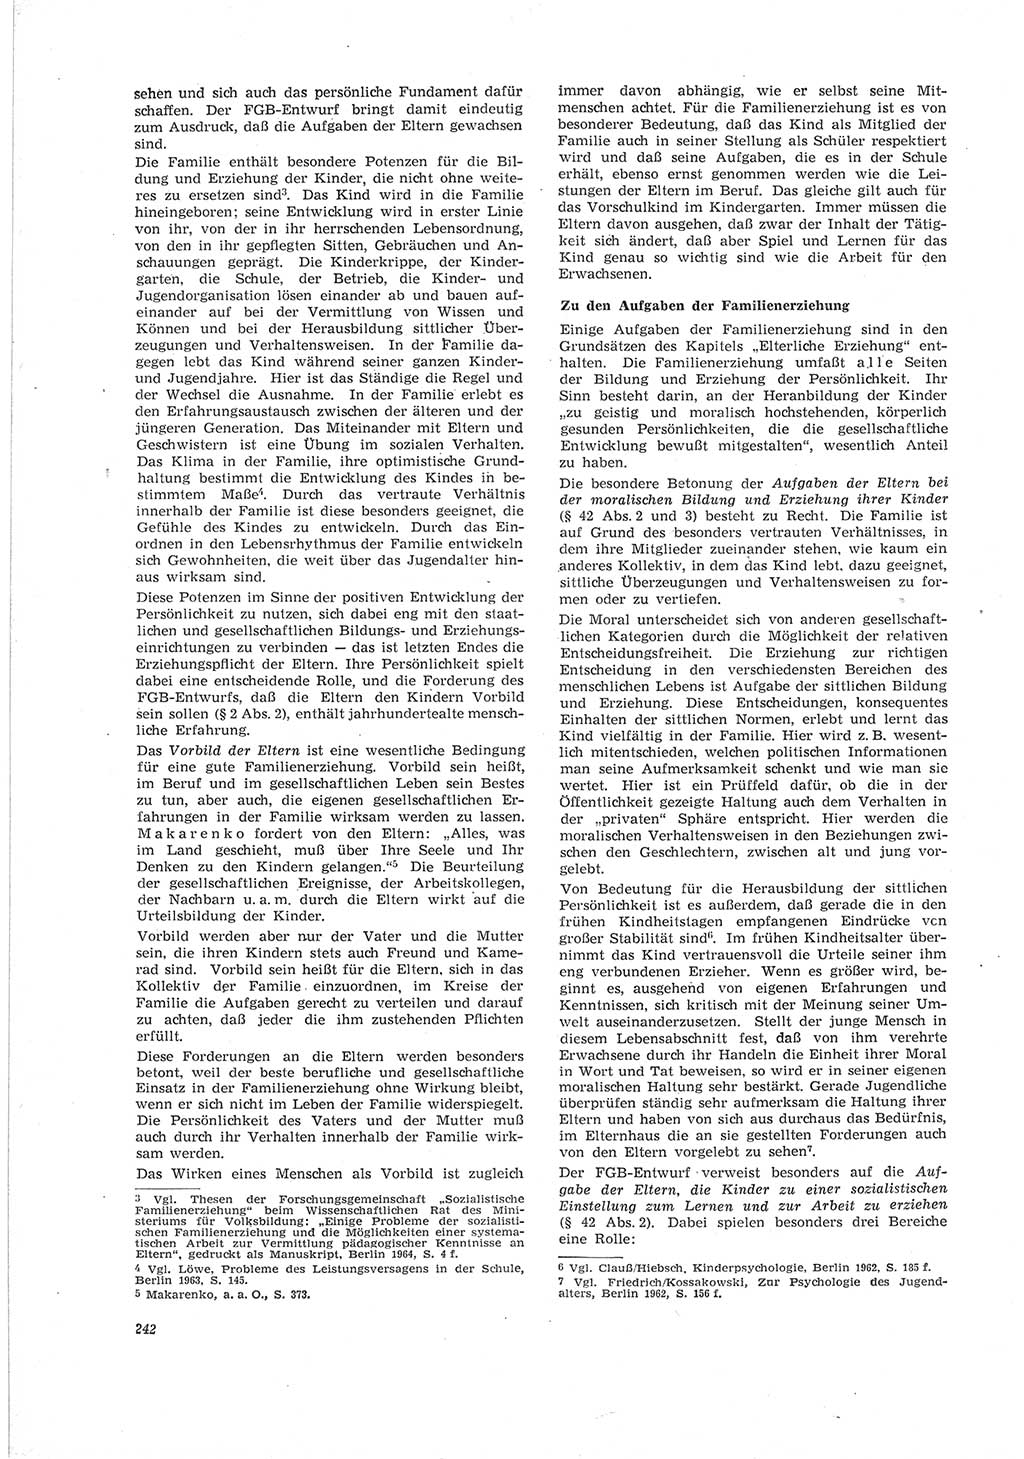 Neue Justiz (NJ), Zeitschrift für Recht und Rechtswissenschaft [Deutsche Demokratische Republik (DDR)], 19. Jahrgang 1965, Seite 242 (NJ DDR 1965, S. 242)